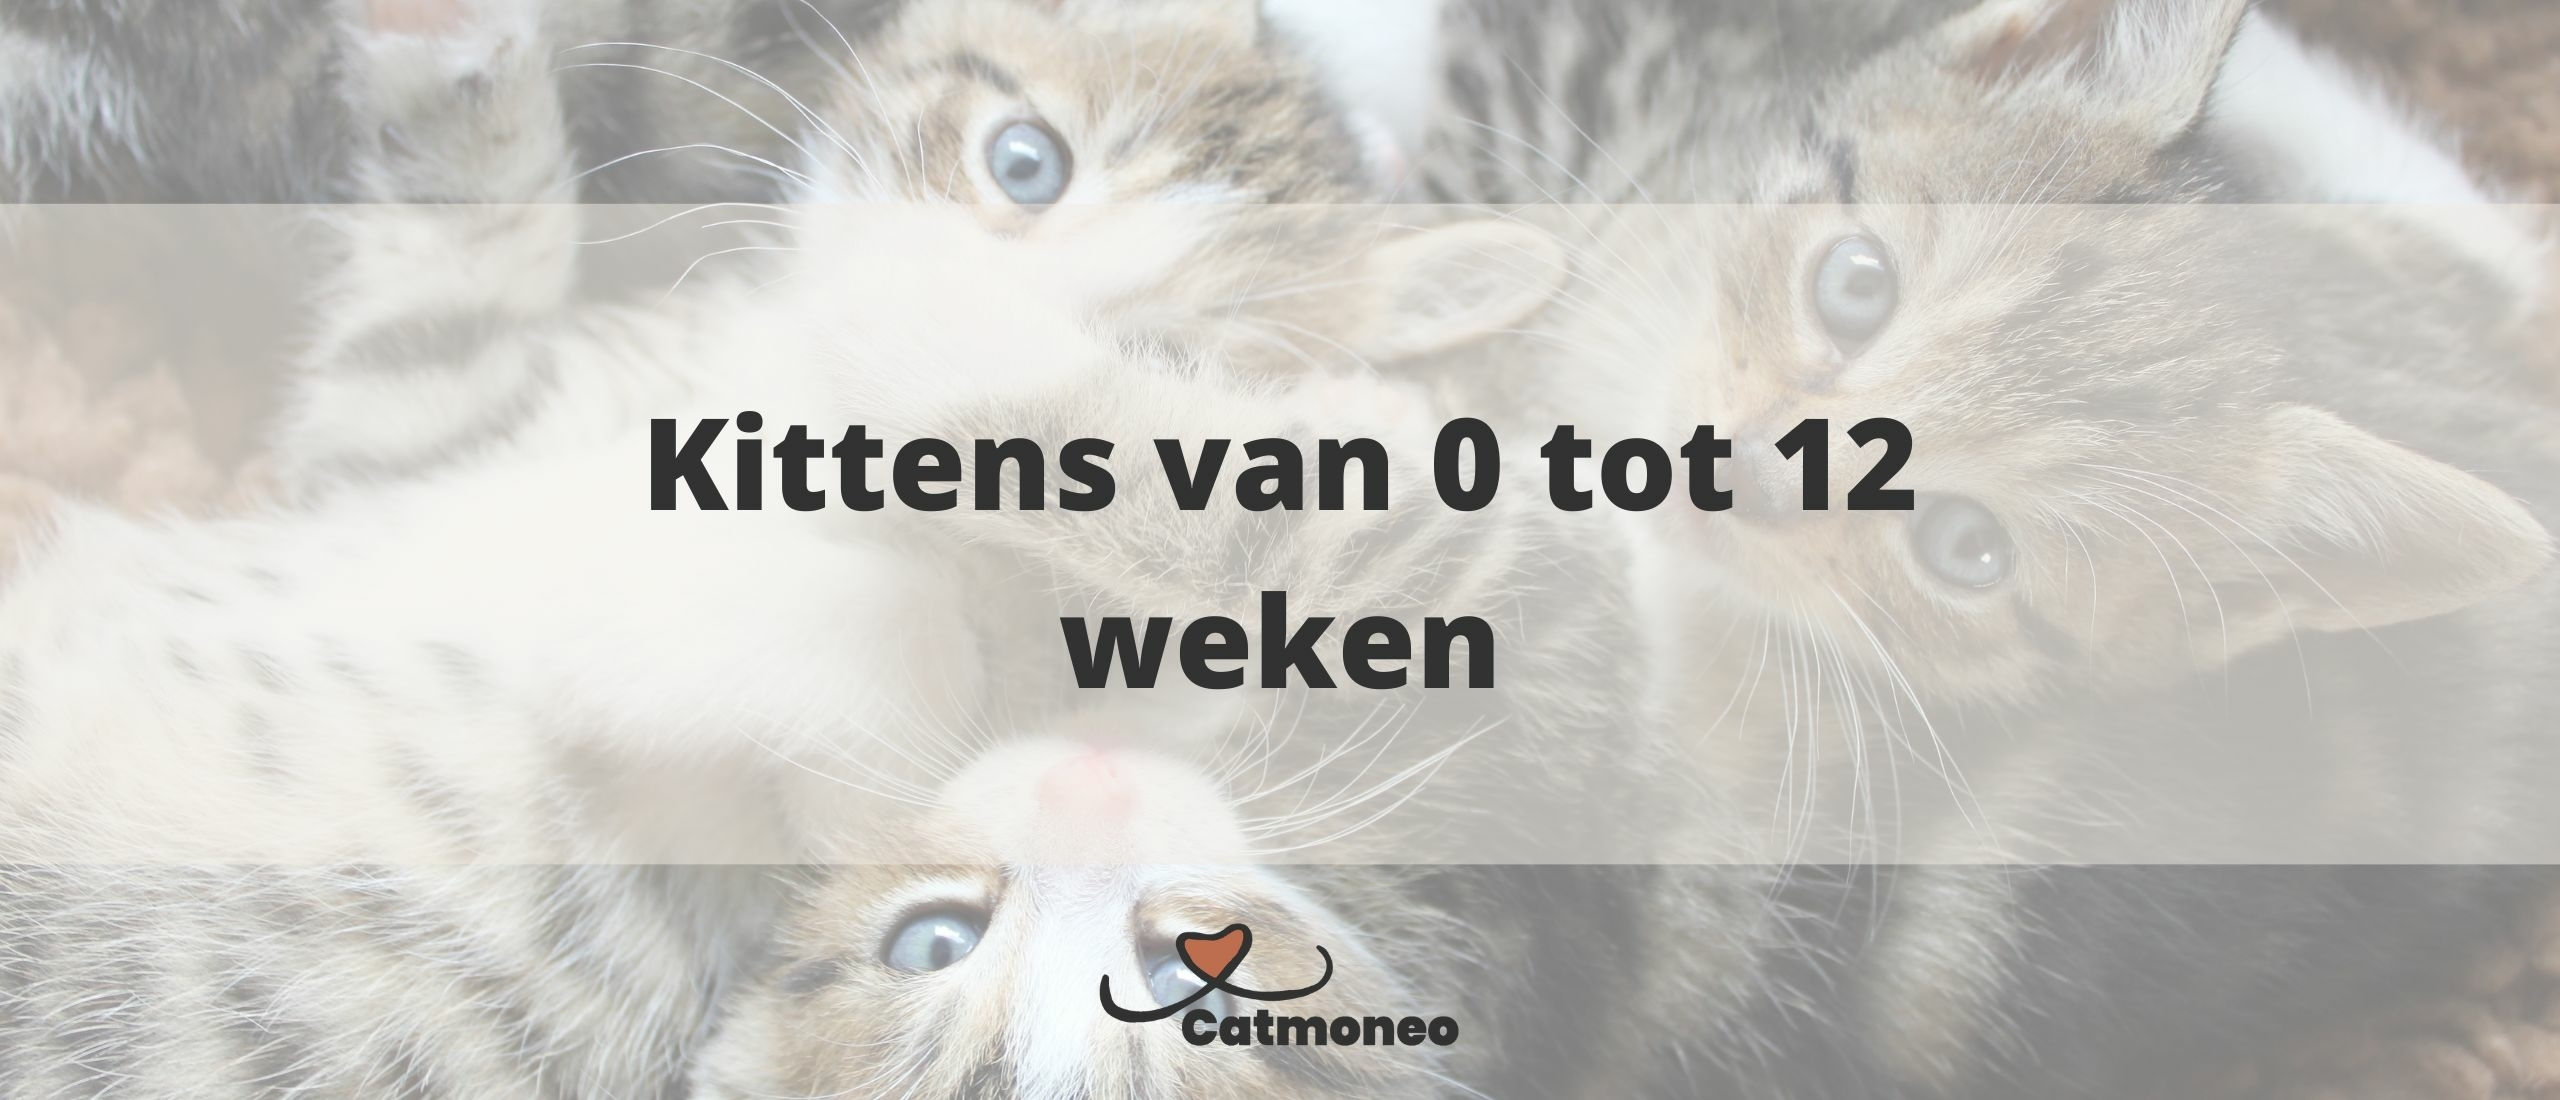 De ontwikkeling van kittens: Foto's van 0 tot 12 week